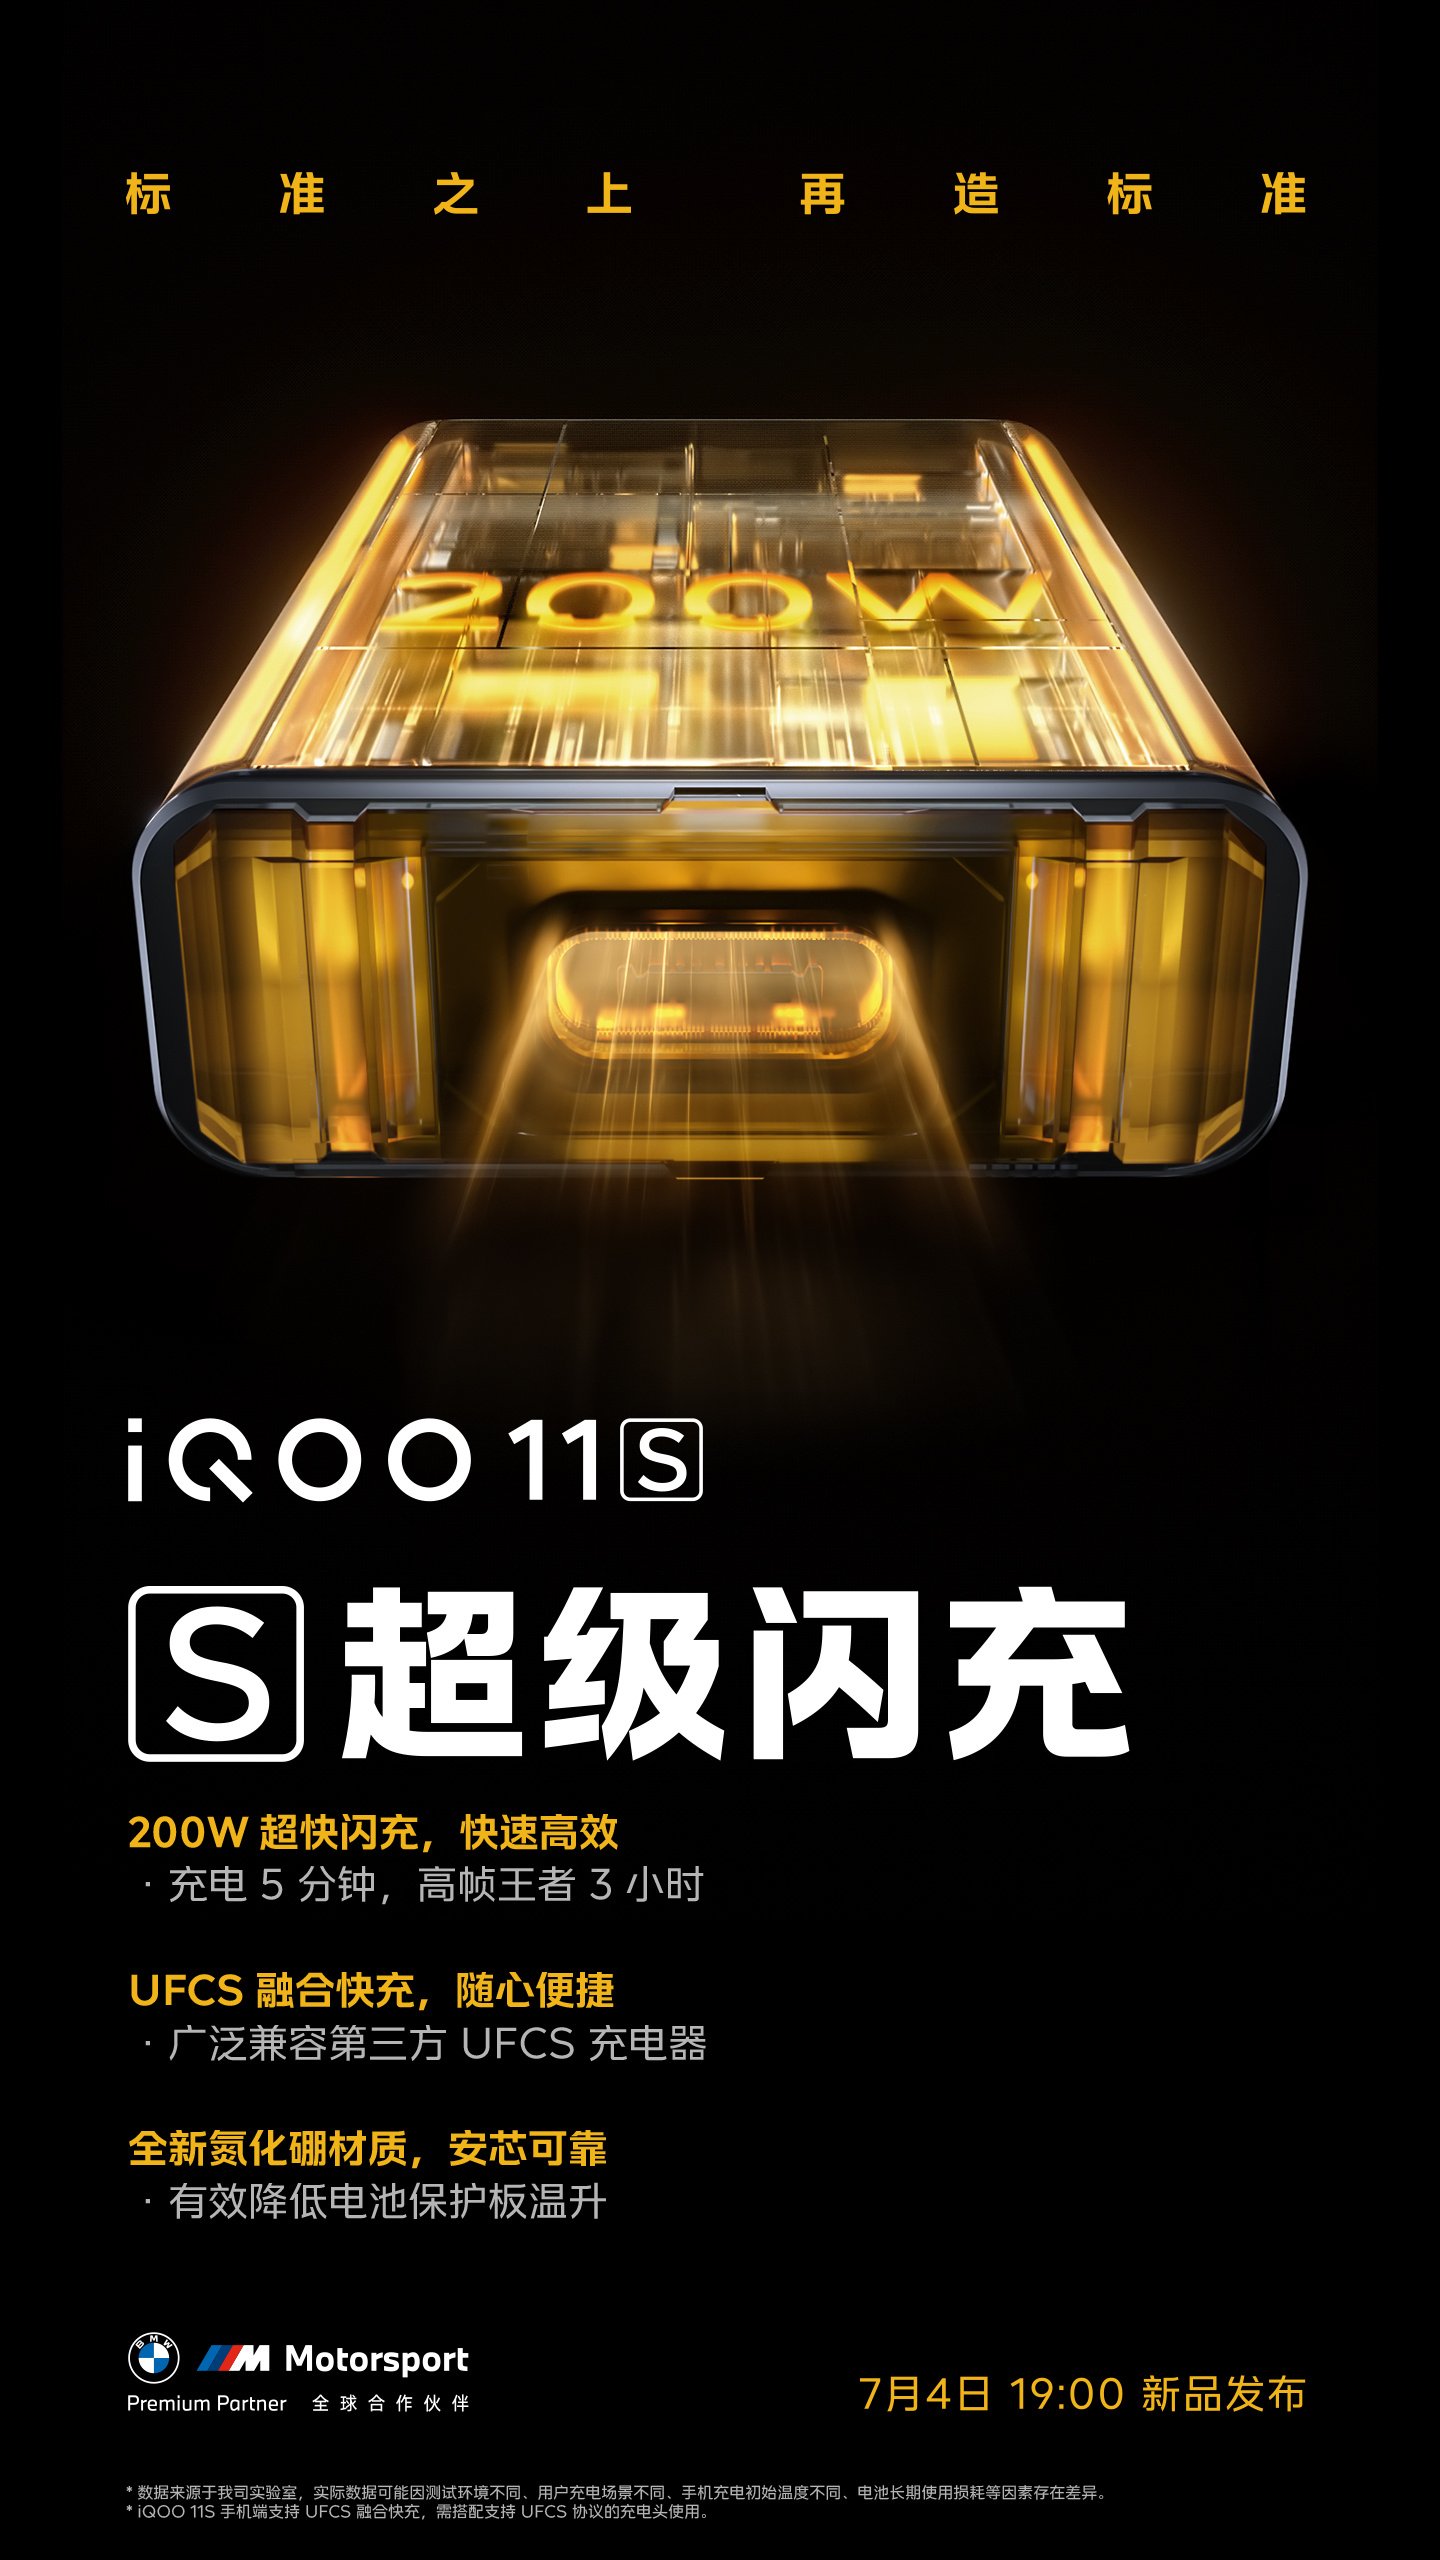 iQOO 11S 200W charging